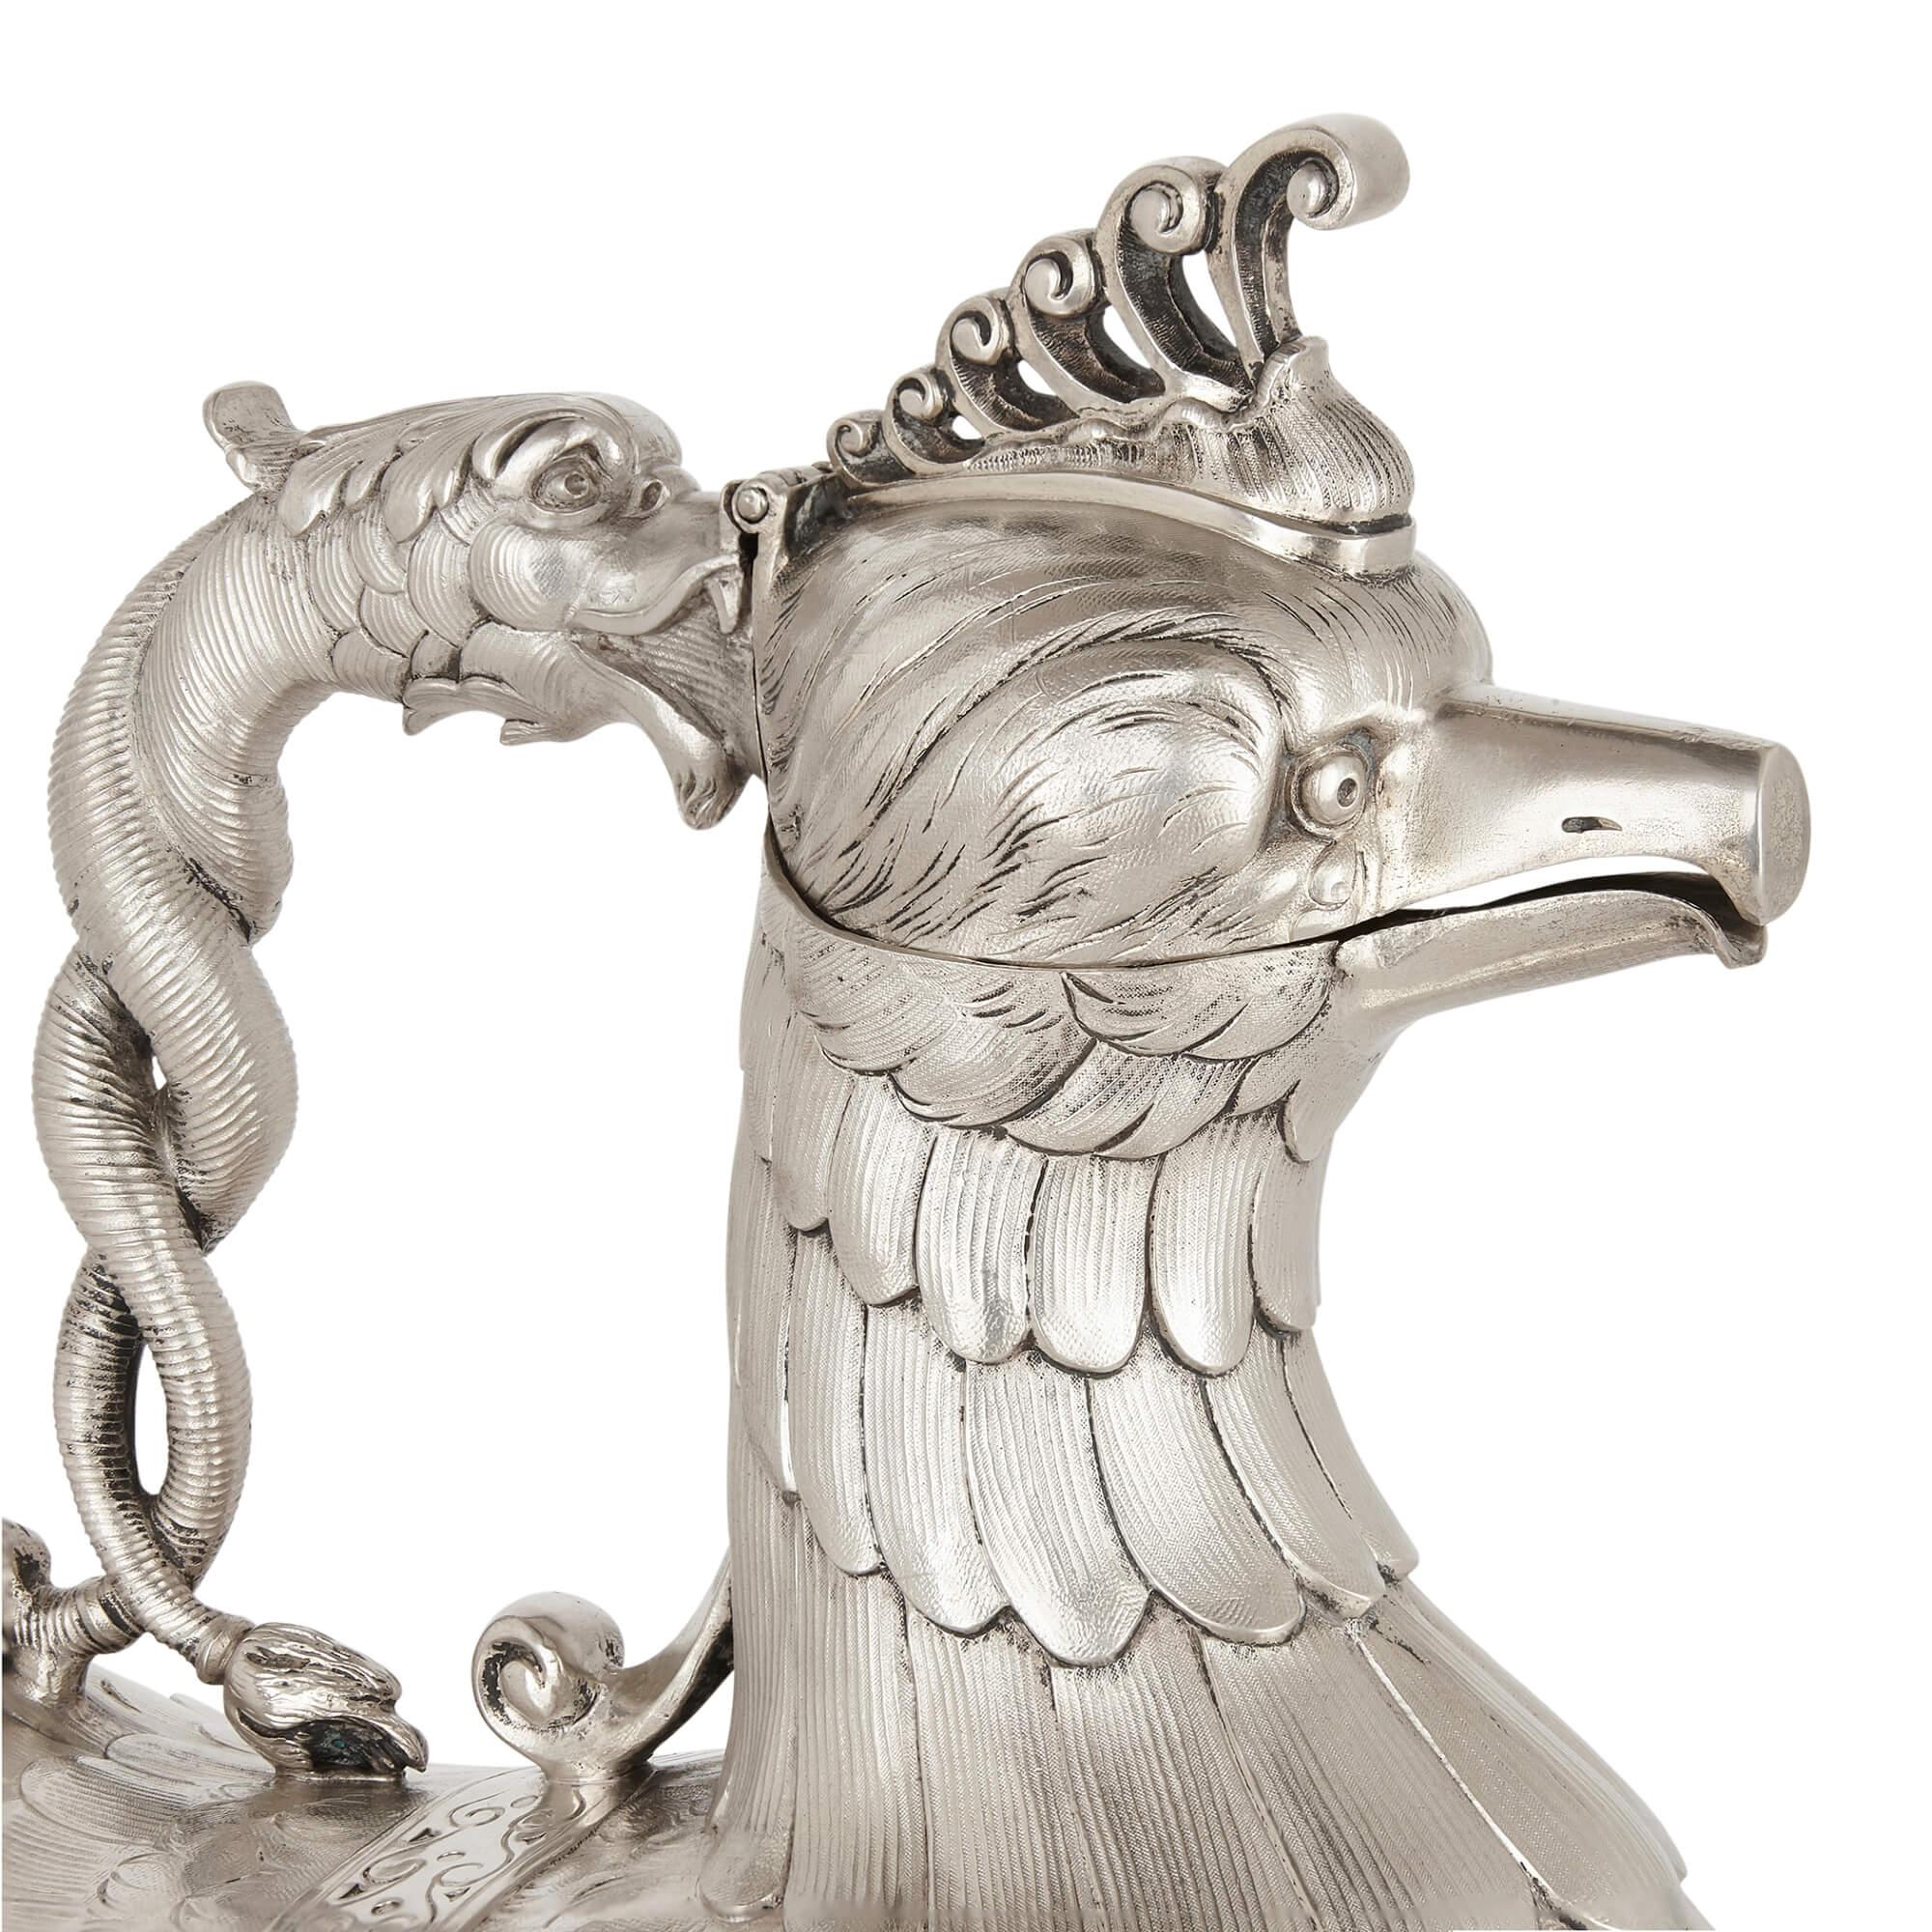 Silver Indian silver mythological bird-form jug For Sale